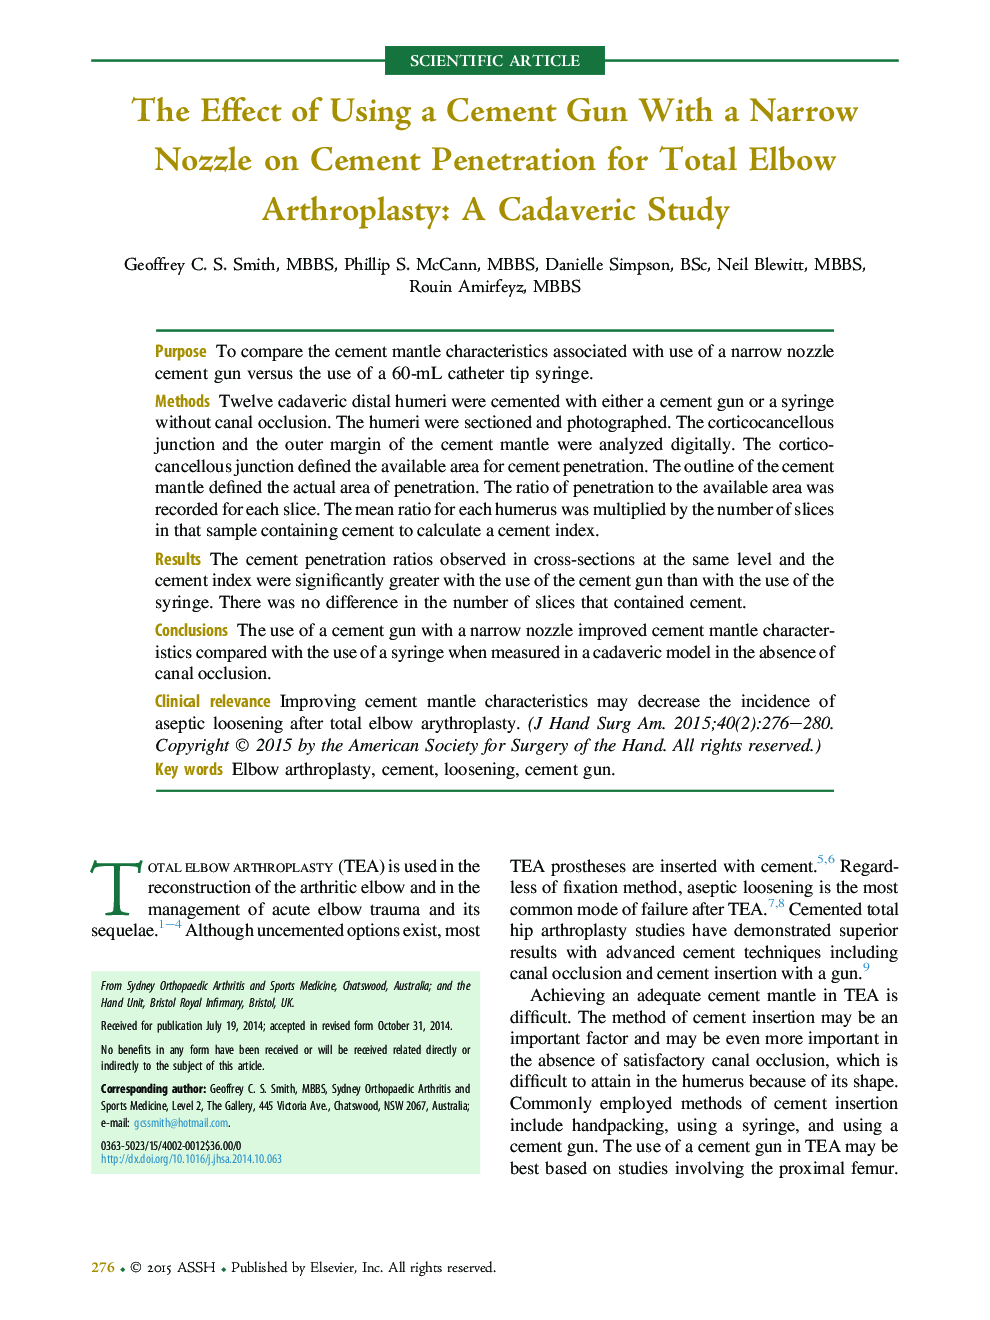 اثر استفاده از یک سلاح سیمان با یک نازل باریک بر نفوذ سیمان برای آرتروپلاستیک کامل آرنج: مطالعات کاداورریک 